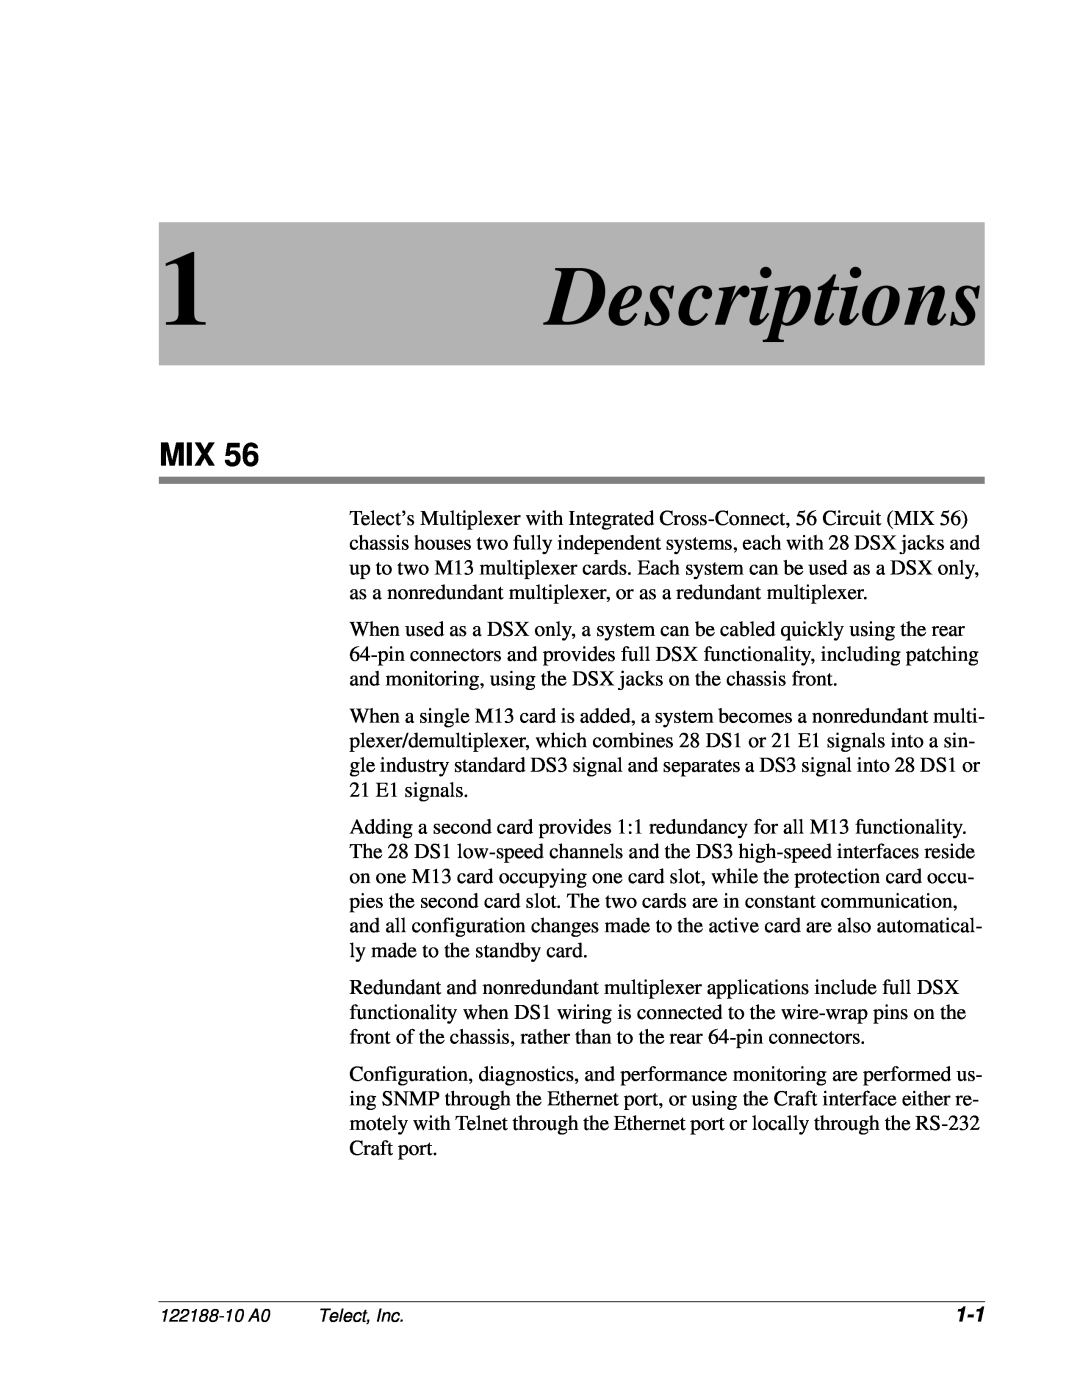 Telect MIX 56 user manual Descriptions 